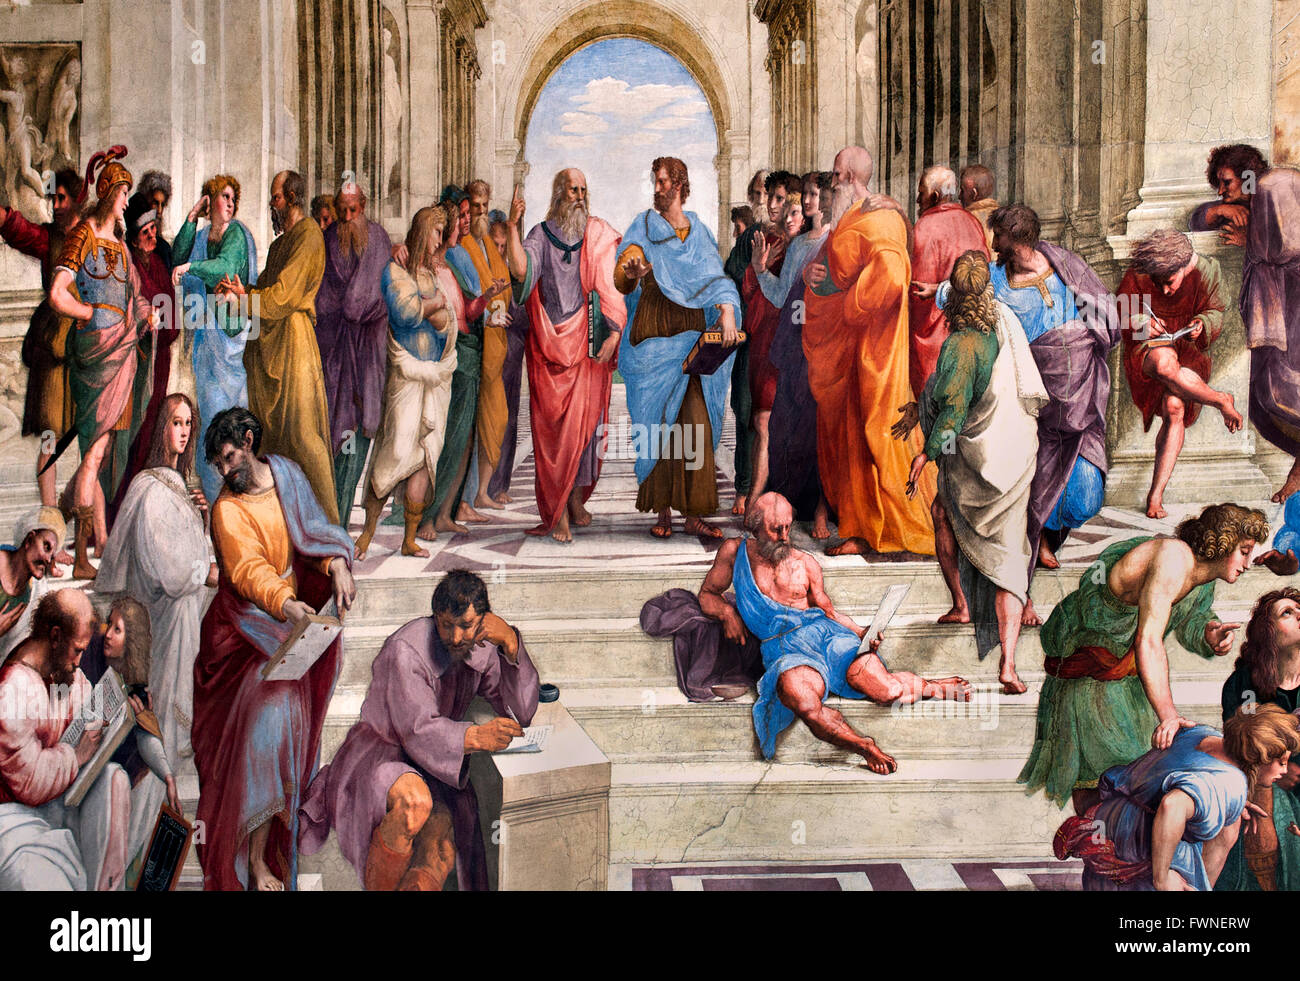 Plato sulla sinistra e Aristotele la Scuola di Atene ( Scuola di Atene ) 1509 - 1511 Stanze di Raffaello (tanze di Raffaello) Raffael Foto Stock